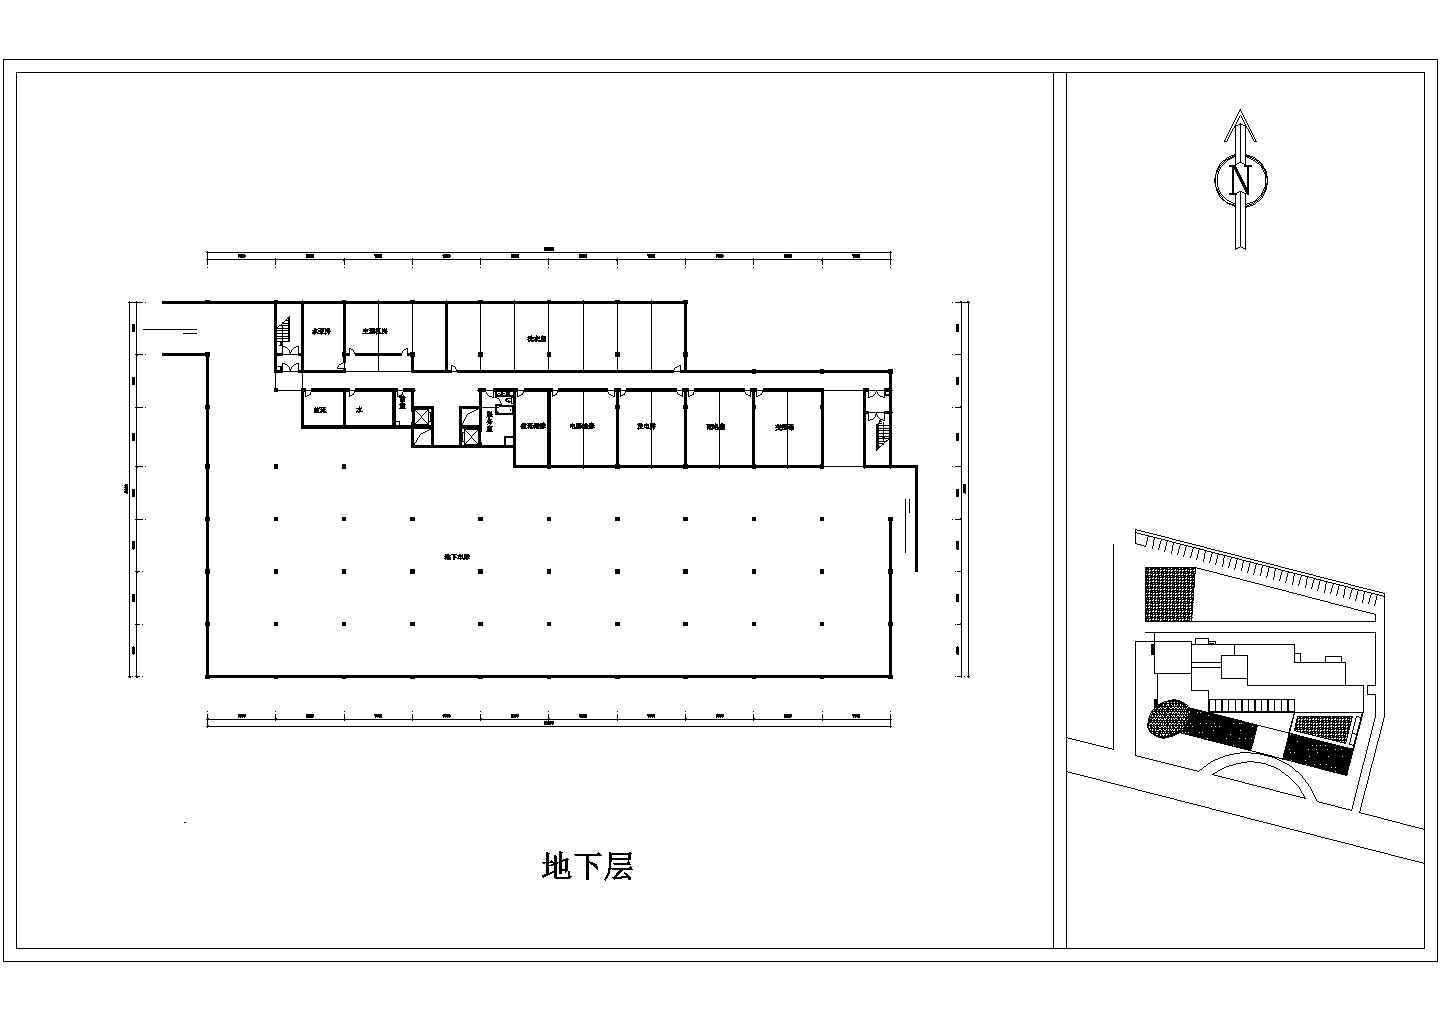 浙江省宁波市某某五星级酒店装修一层设计cad平面施工图